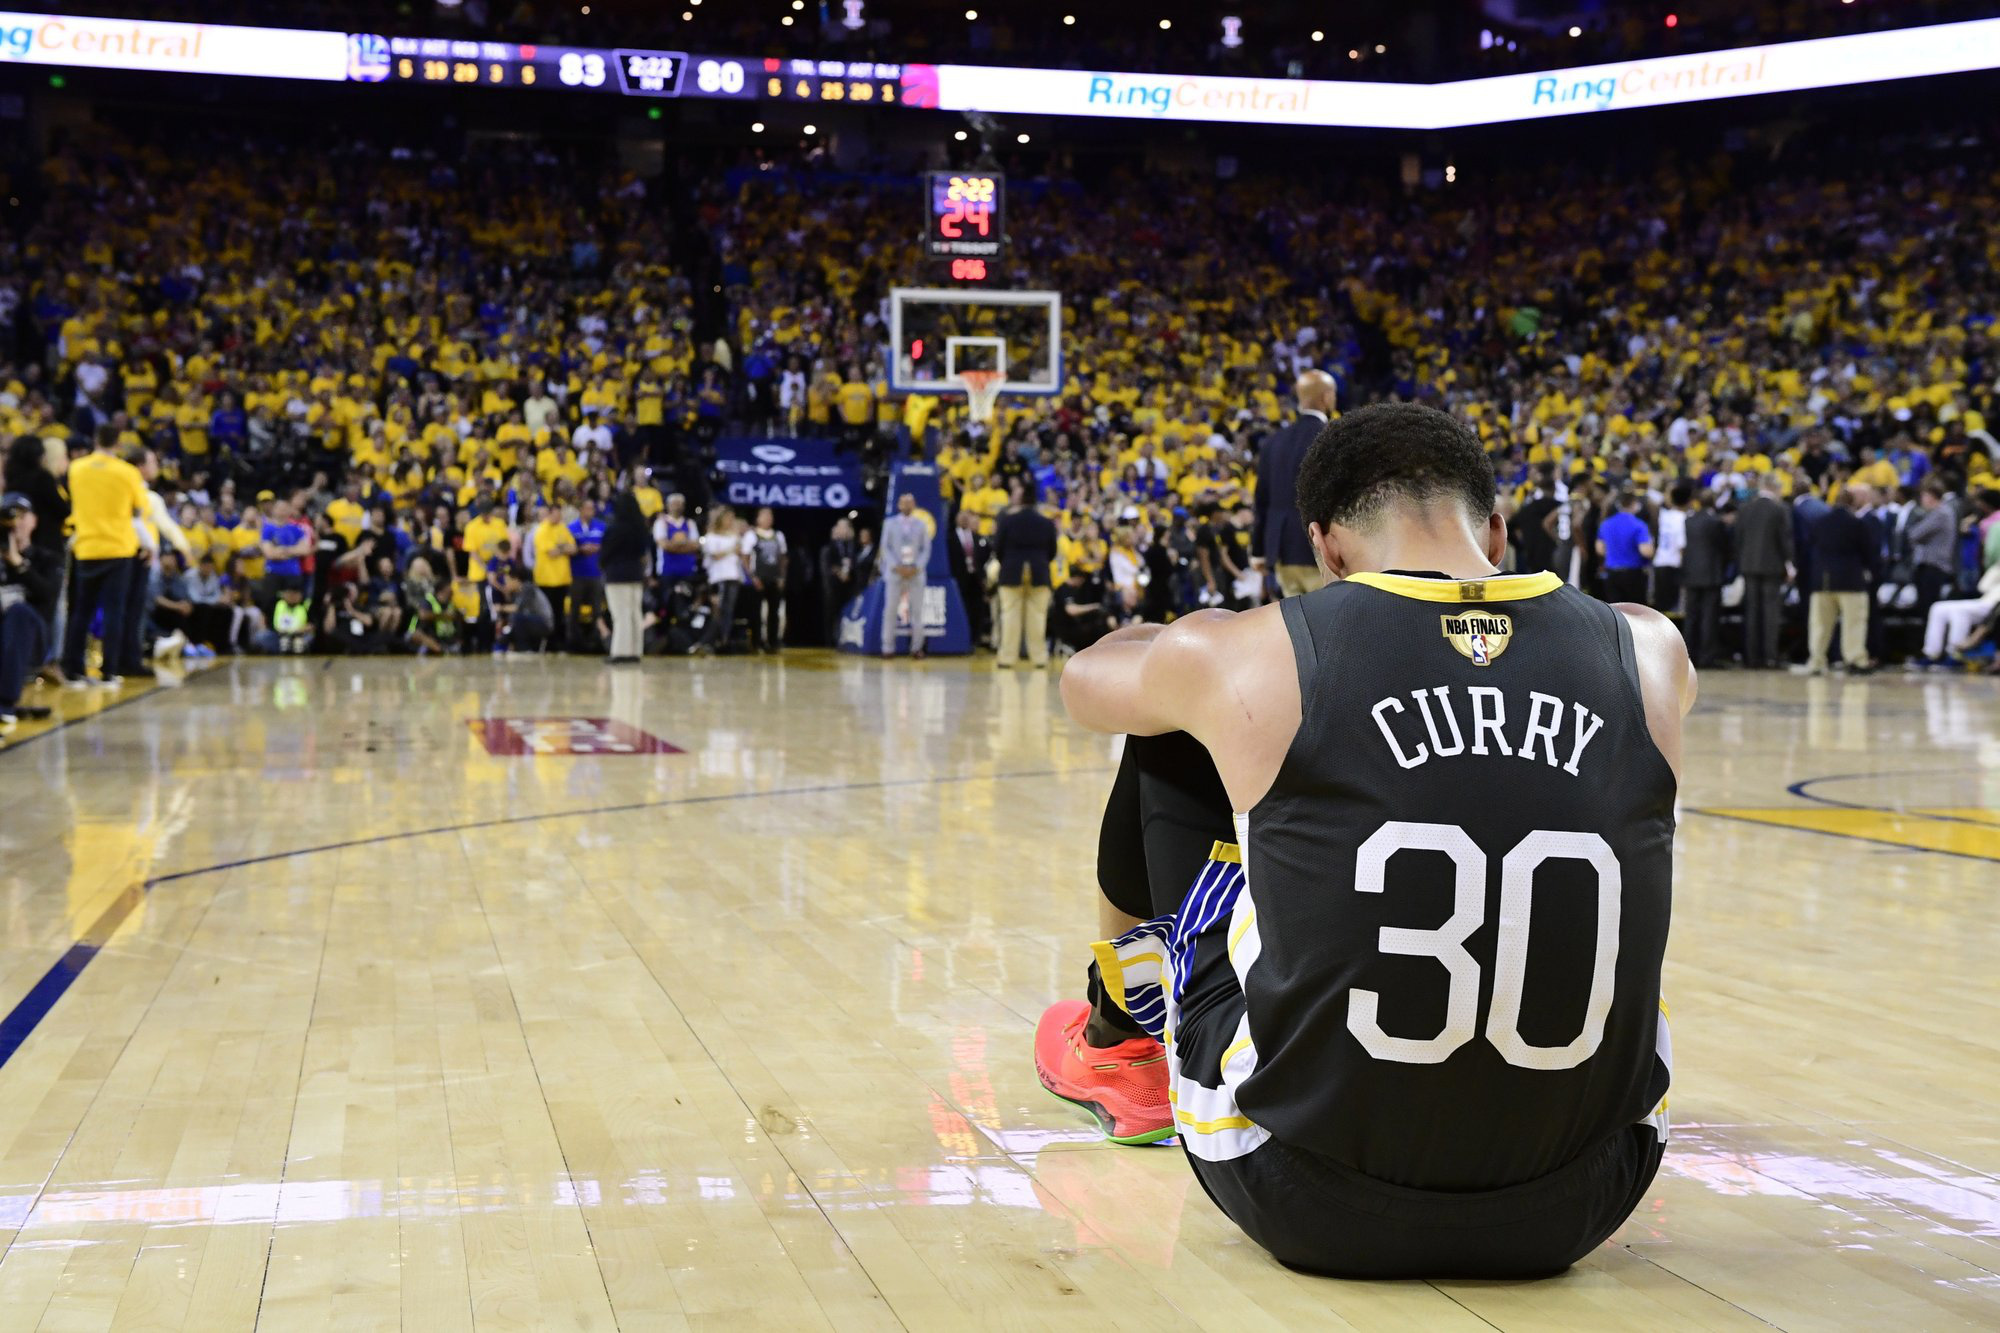 10 khoảnh khắc đắt giá ở giải bóng rổ hấp dẫn nhất thế giới trong thập kỷ vừa qua: Kobe Bryant thăng hoa lần cuối, Stephen Curry bó gối nhìn triều đại Golden State Warriors sụp đổ - Ảnh 10.